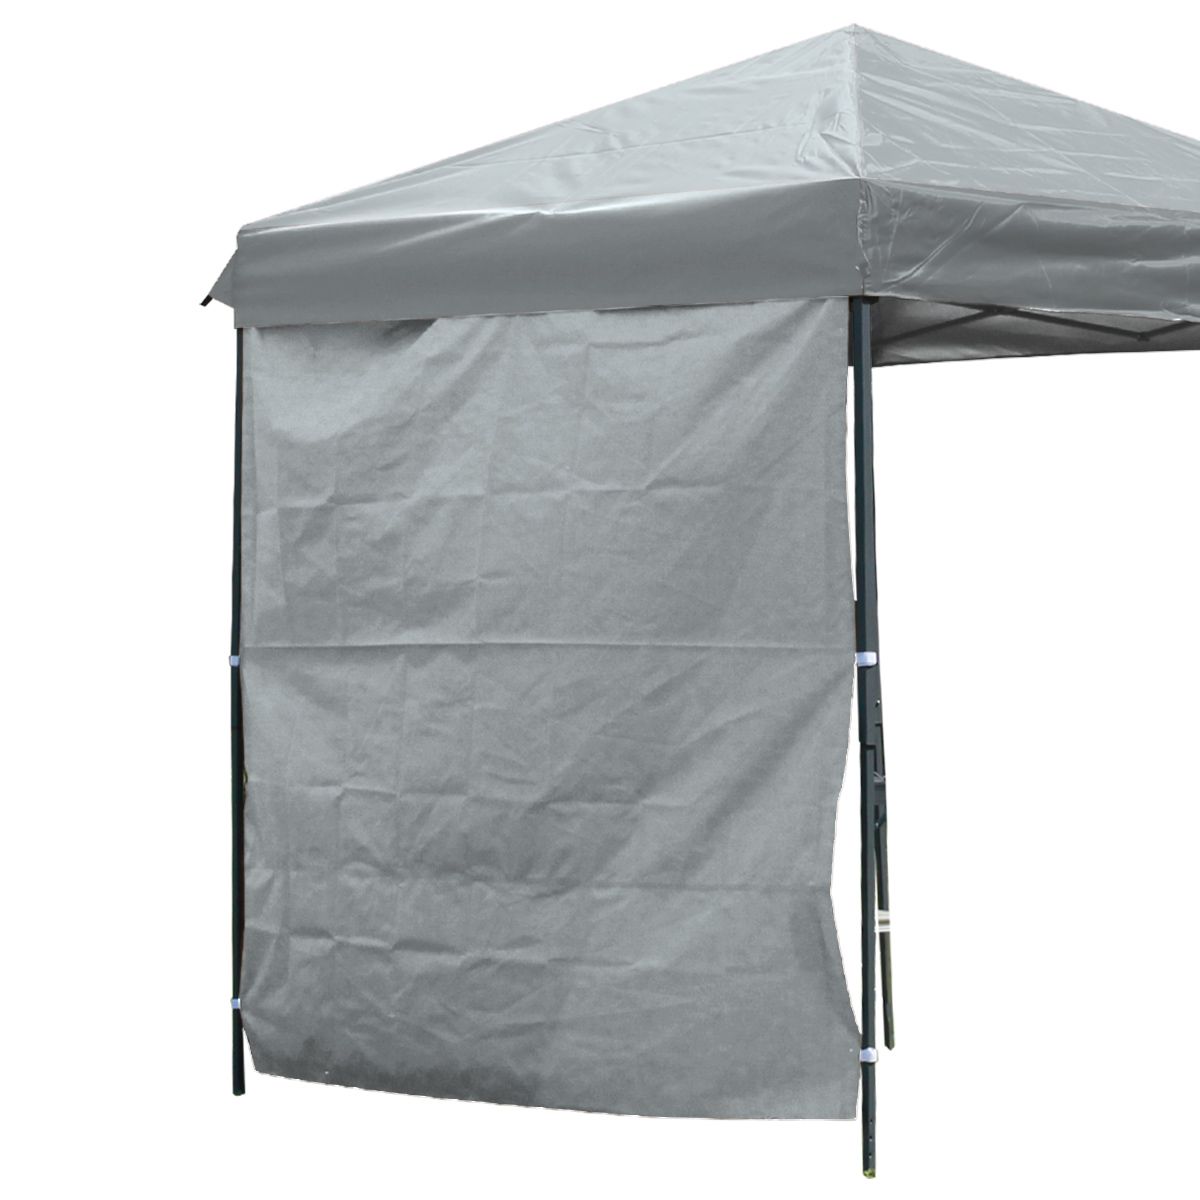 サイドシート タープテント 3m 1枚 取付簡単 サイドウォール テント ワンタッチ サンシェード スチール 日よけ タープ部品 キャンプ BBQ  MERMONT